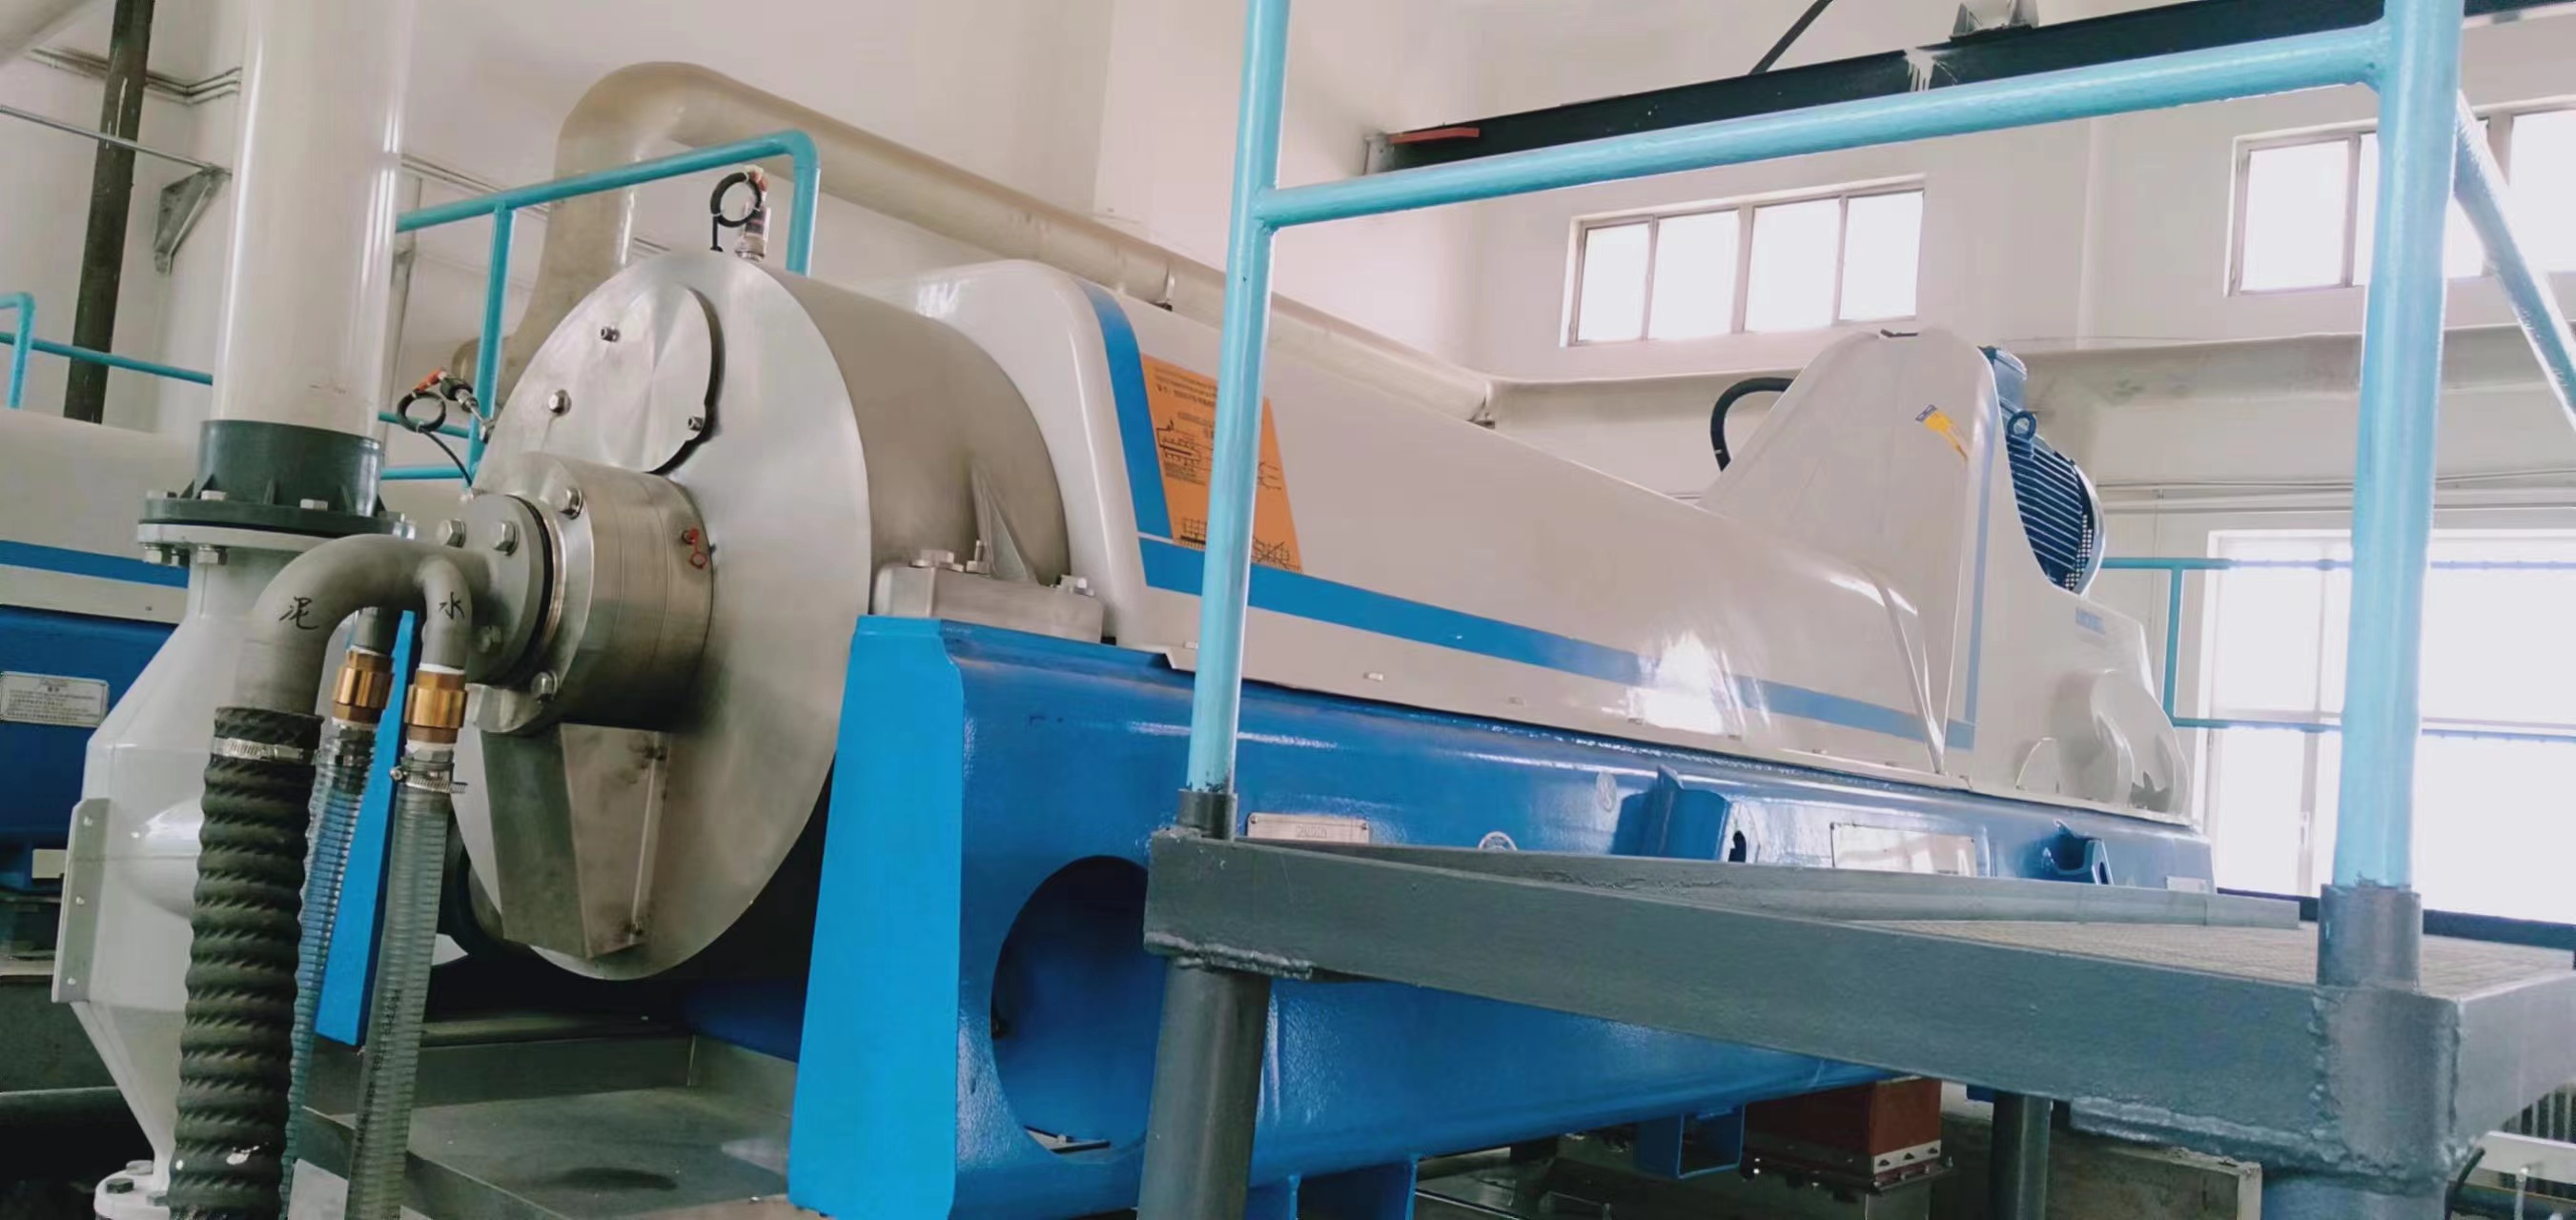 甘肃张掖钢厂卧螺离心机差速器维修恢复五台维修